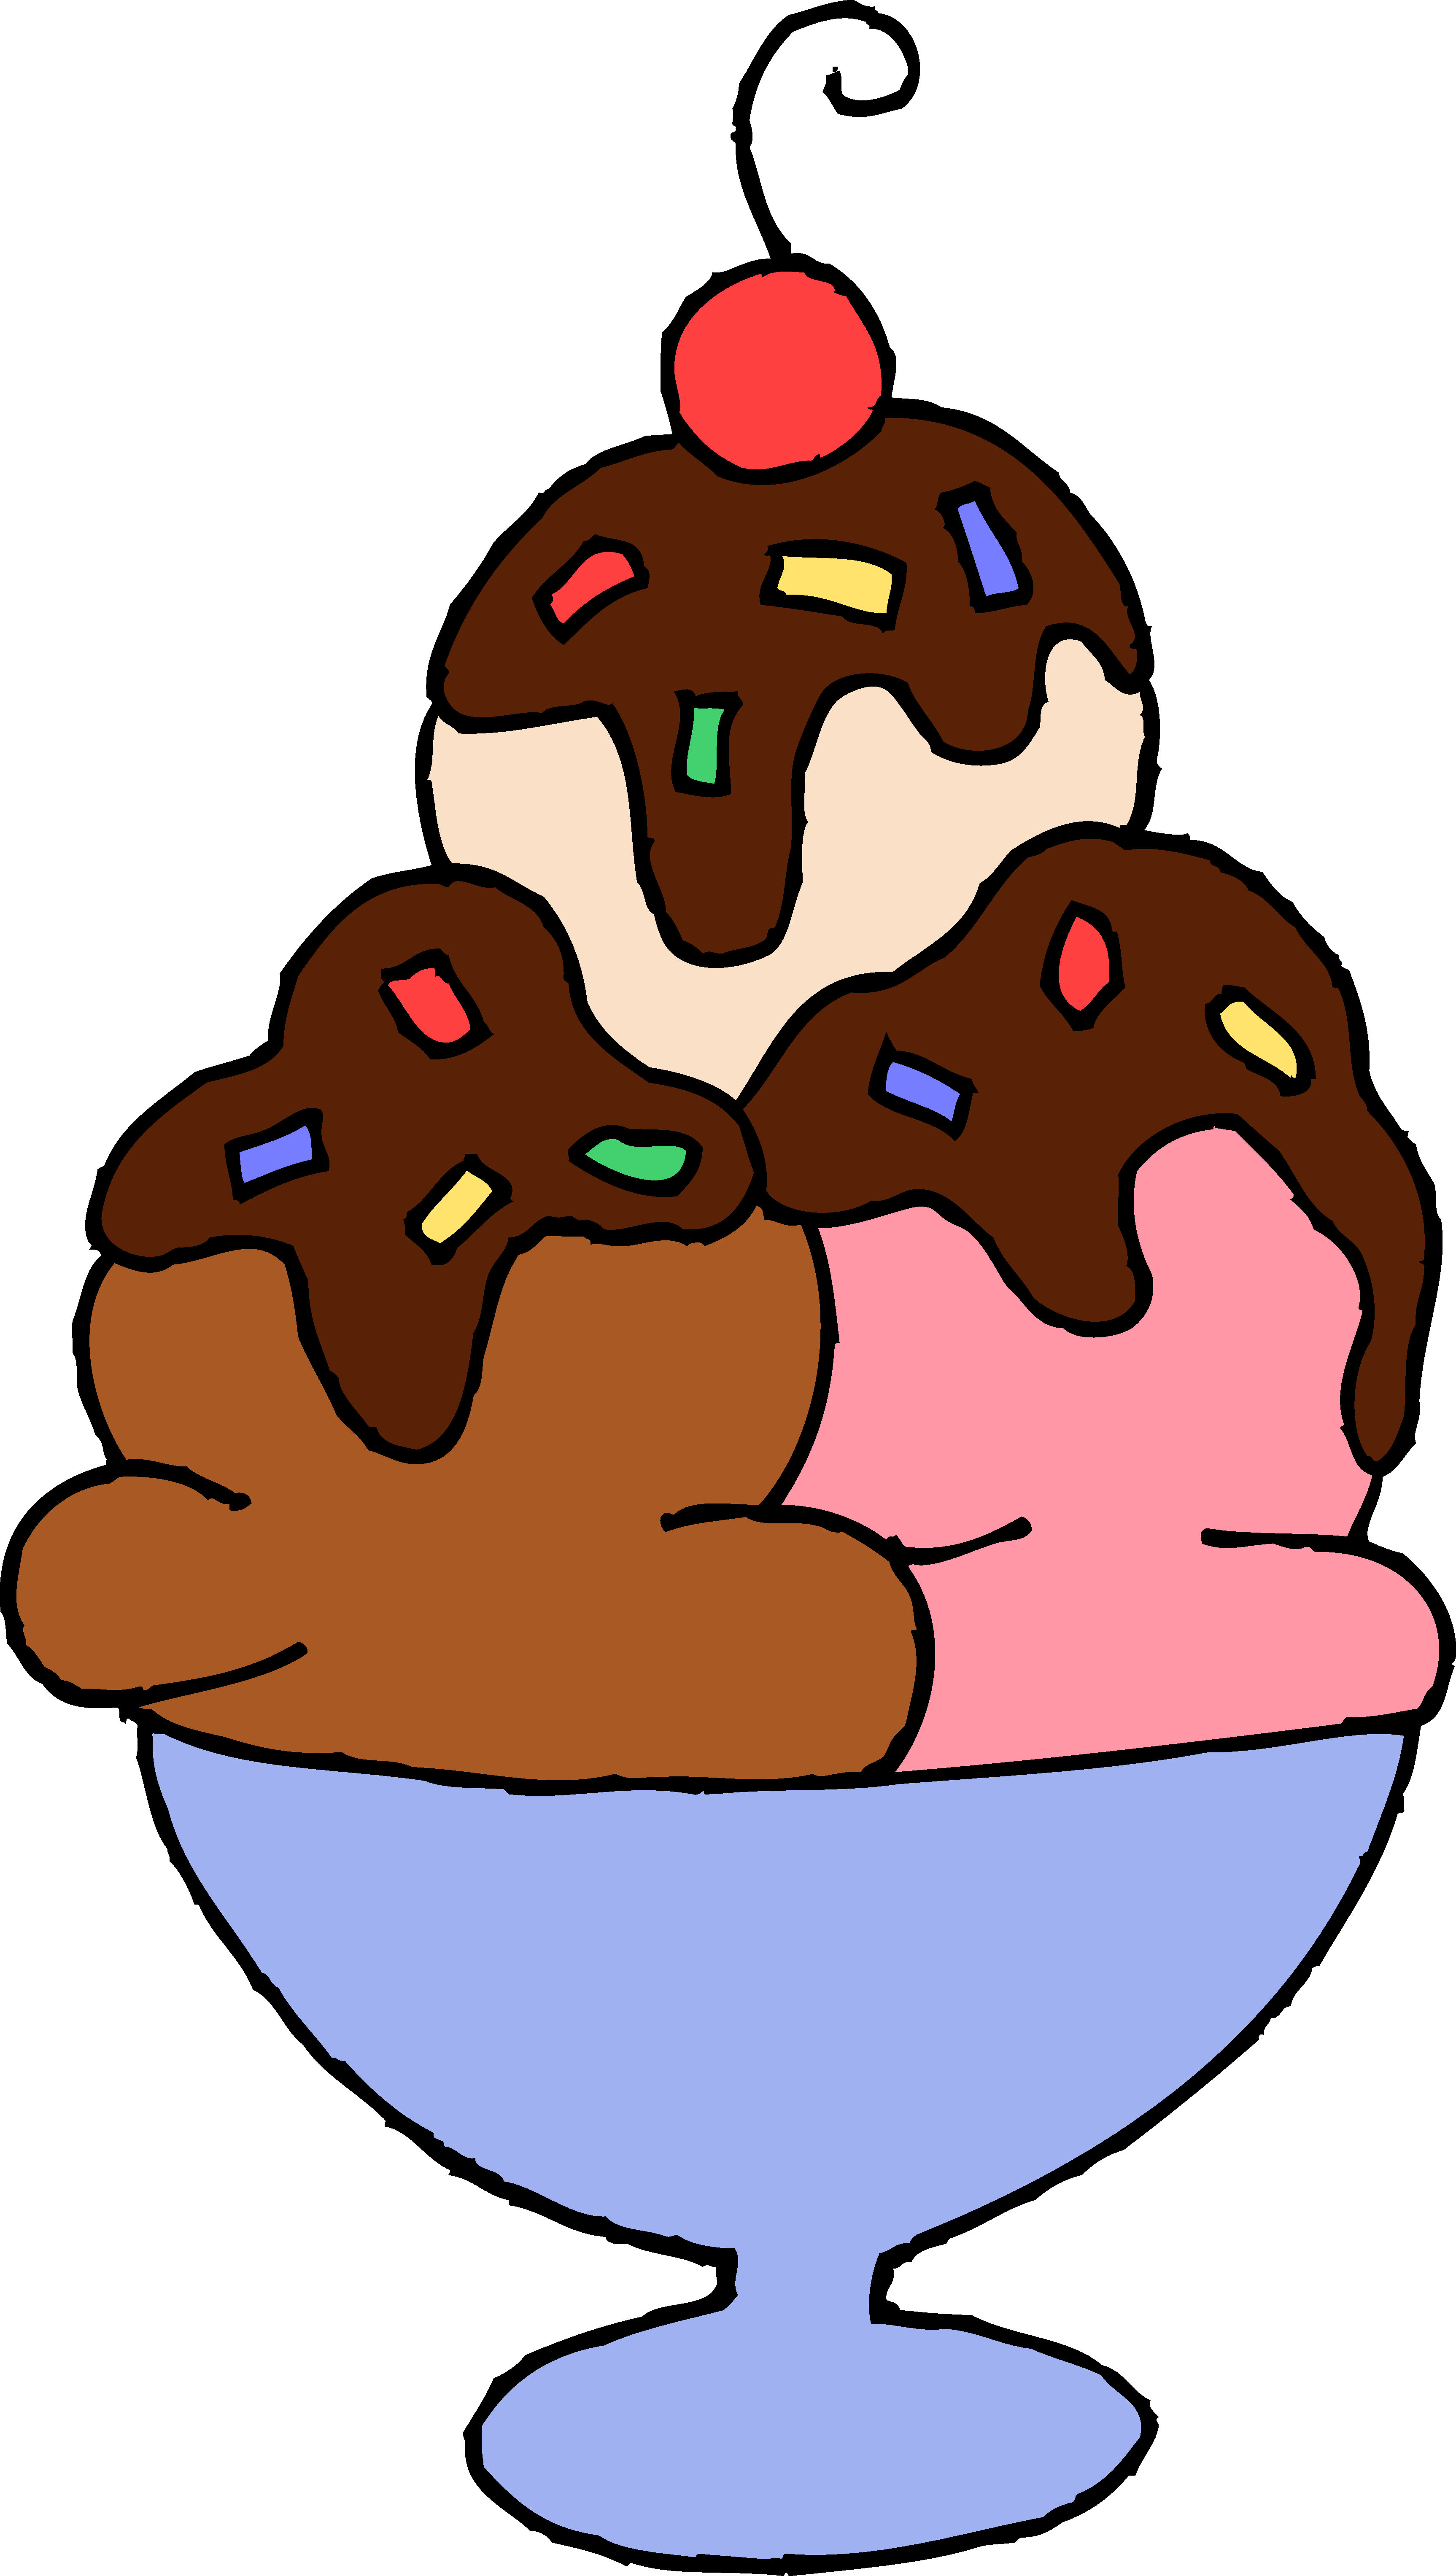 icecream clipart hot fudge sundae